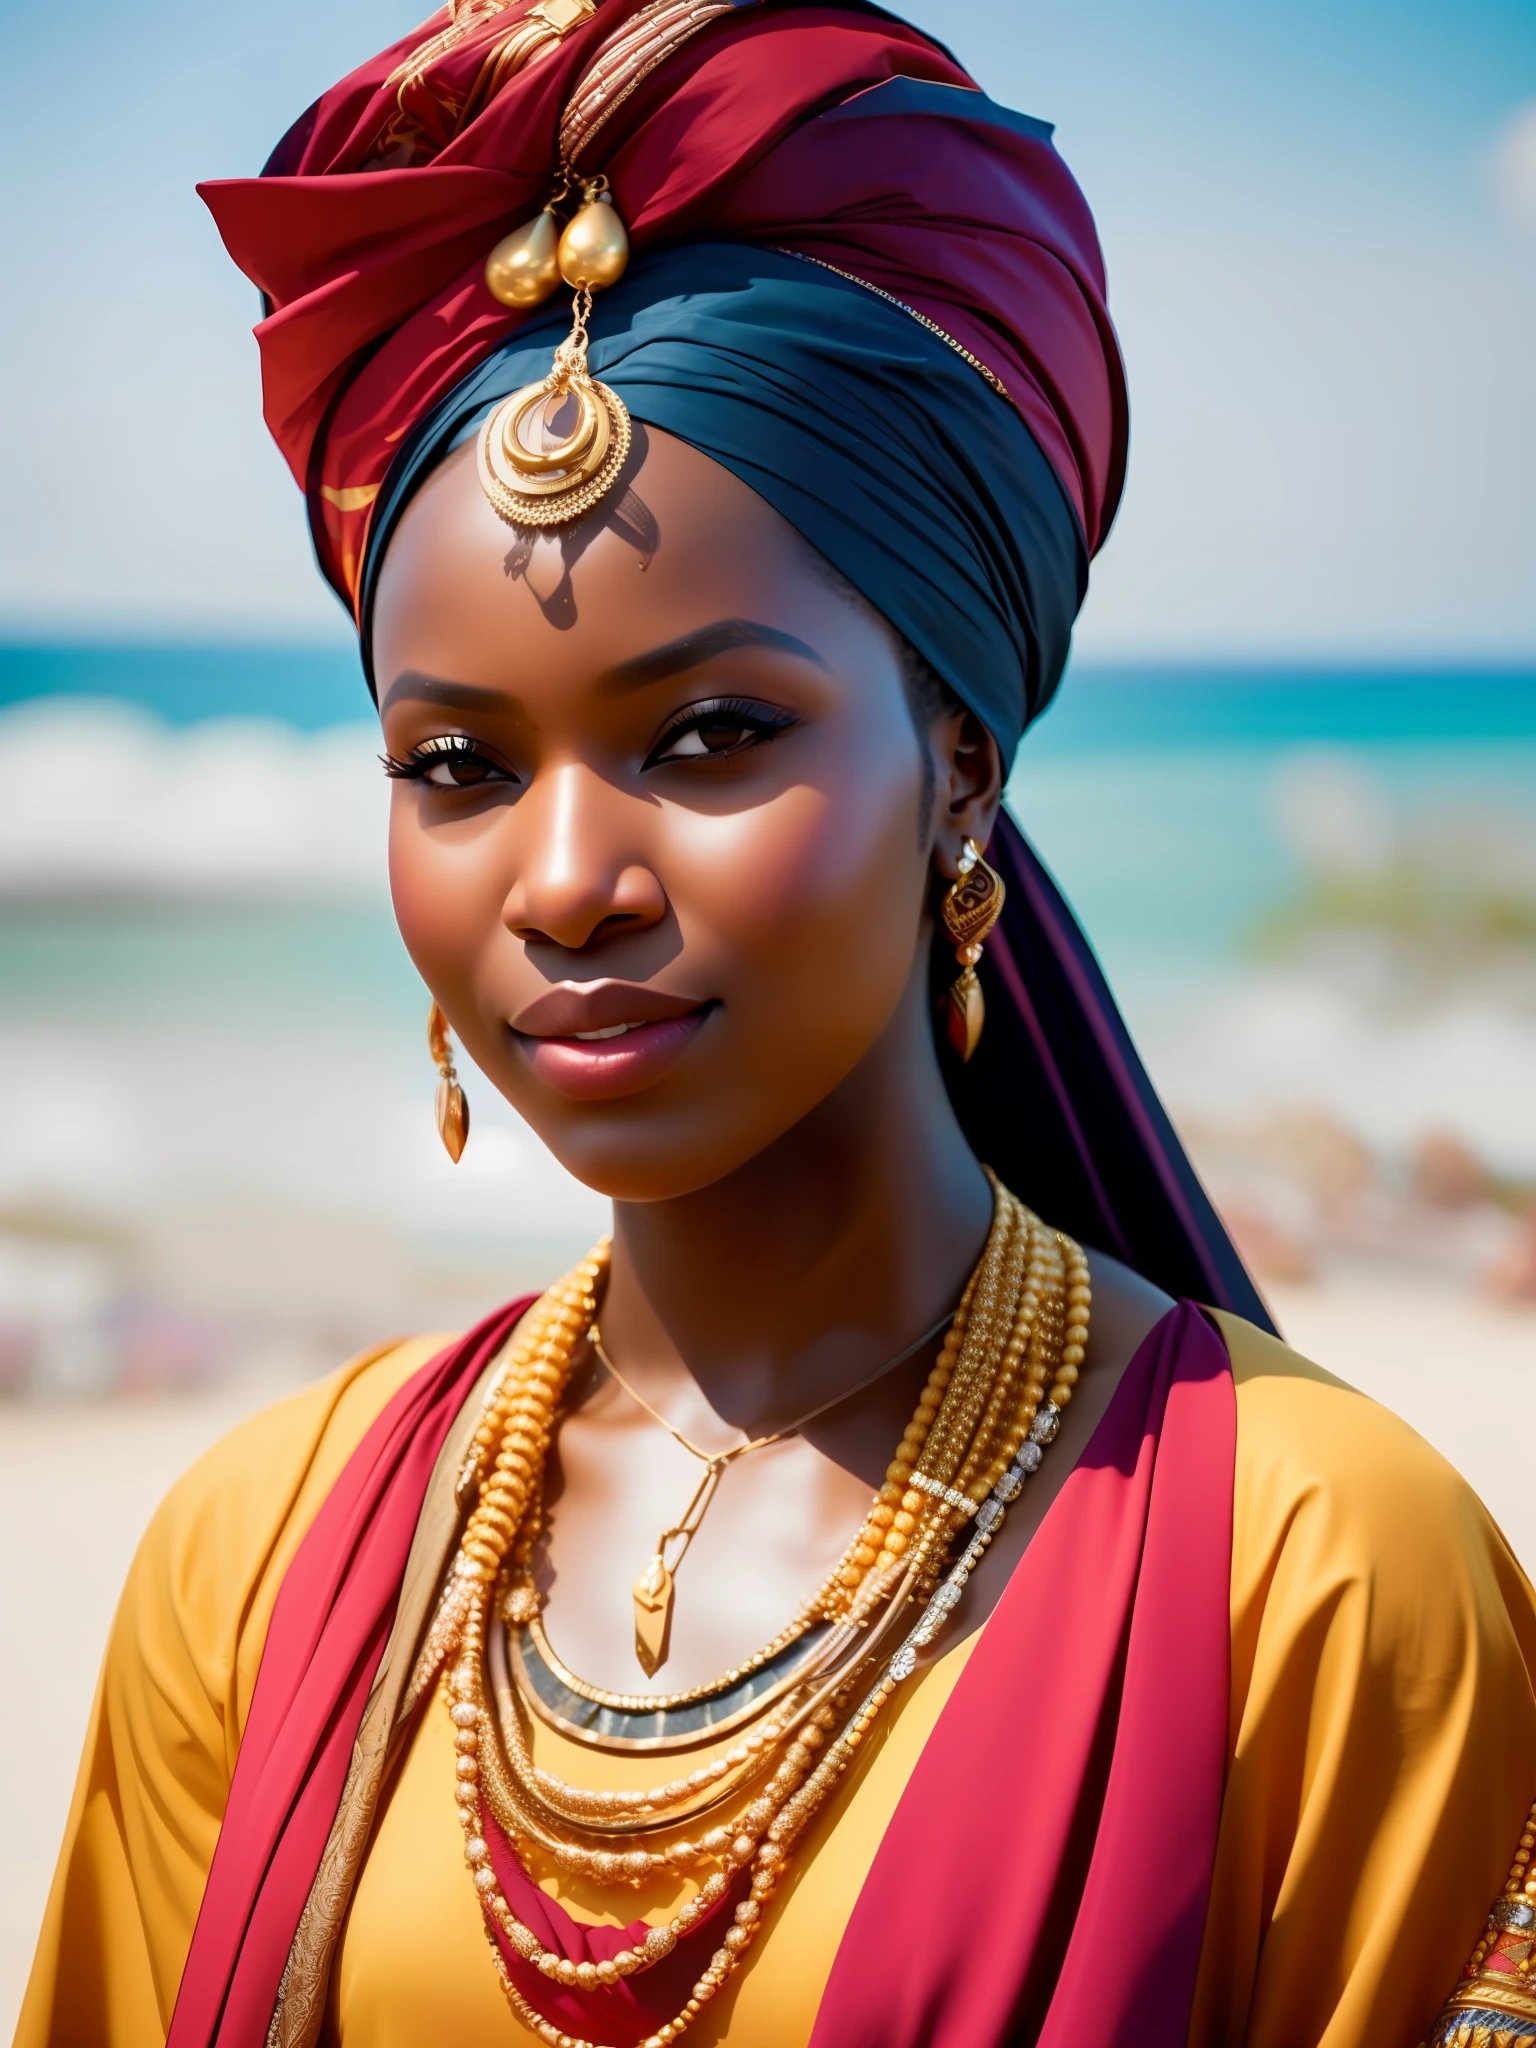 porra_ficção científica, porra_ficção científica_v2, retrato de uma jovem africana muito bonita, em frente a uma praia, roupas coloridas ricas, turbante e joias africanas douradas, fechar-se, pose e atitude reais. porra_cinema_v2. porra_cinema_v2